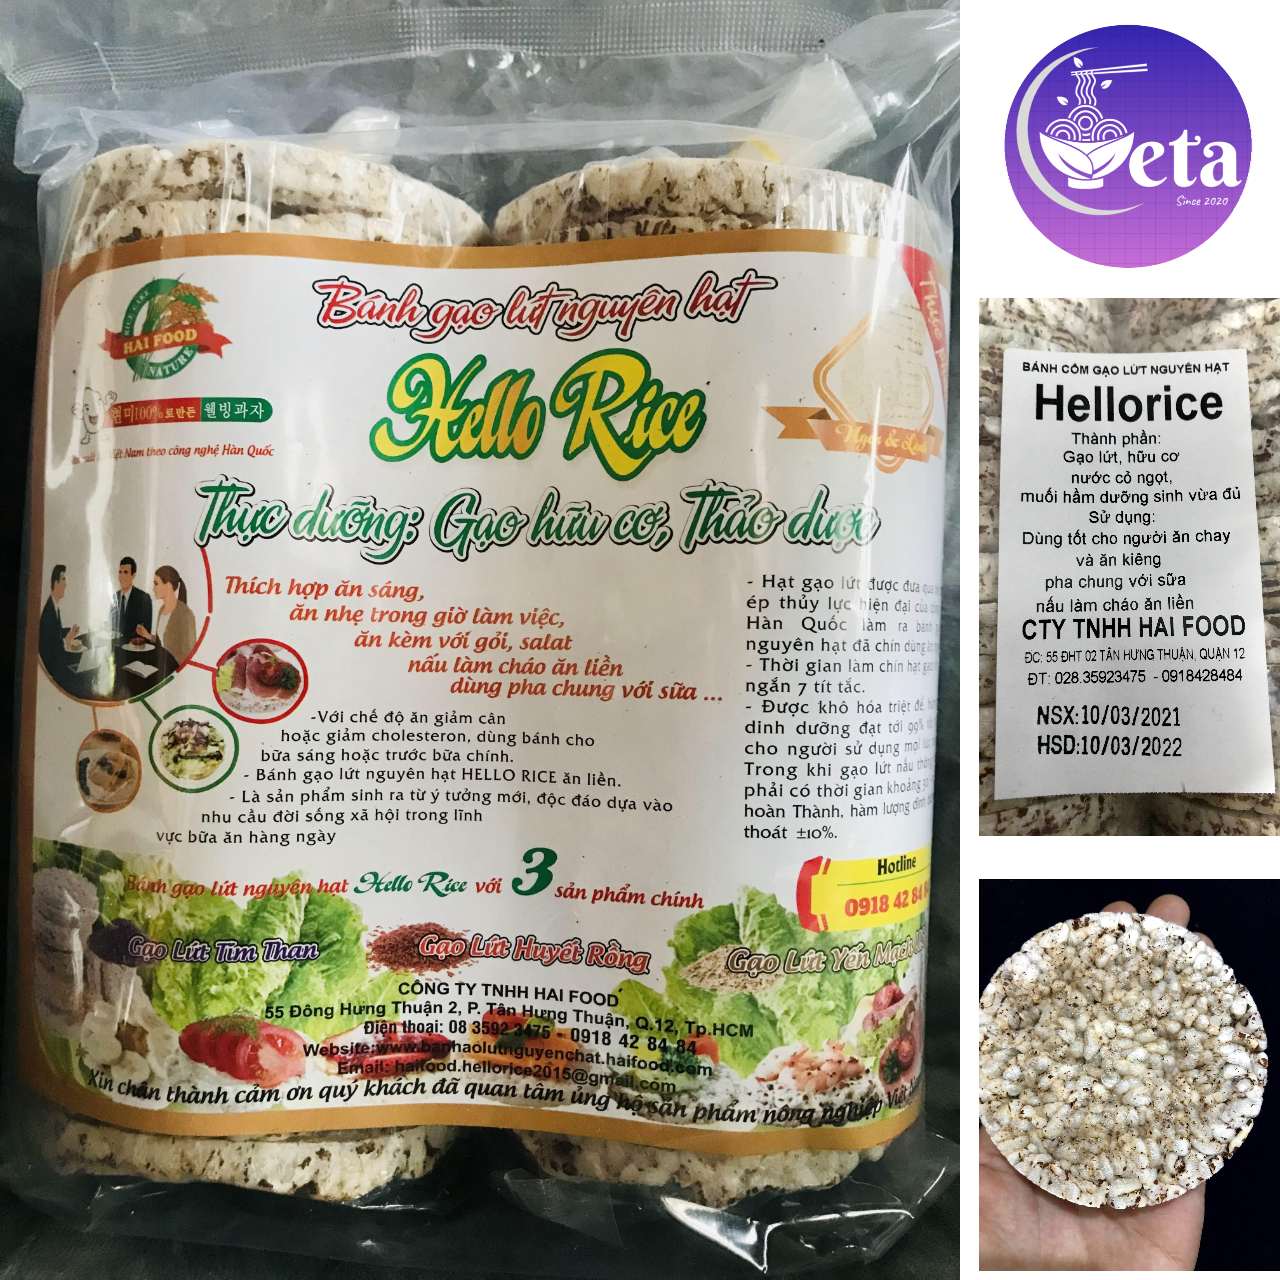 Bánh gạo lứt ăn kiêng Hello Rice, bánh gạo lức nguyên hạt 300gr 500gr